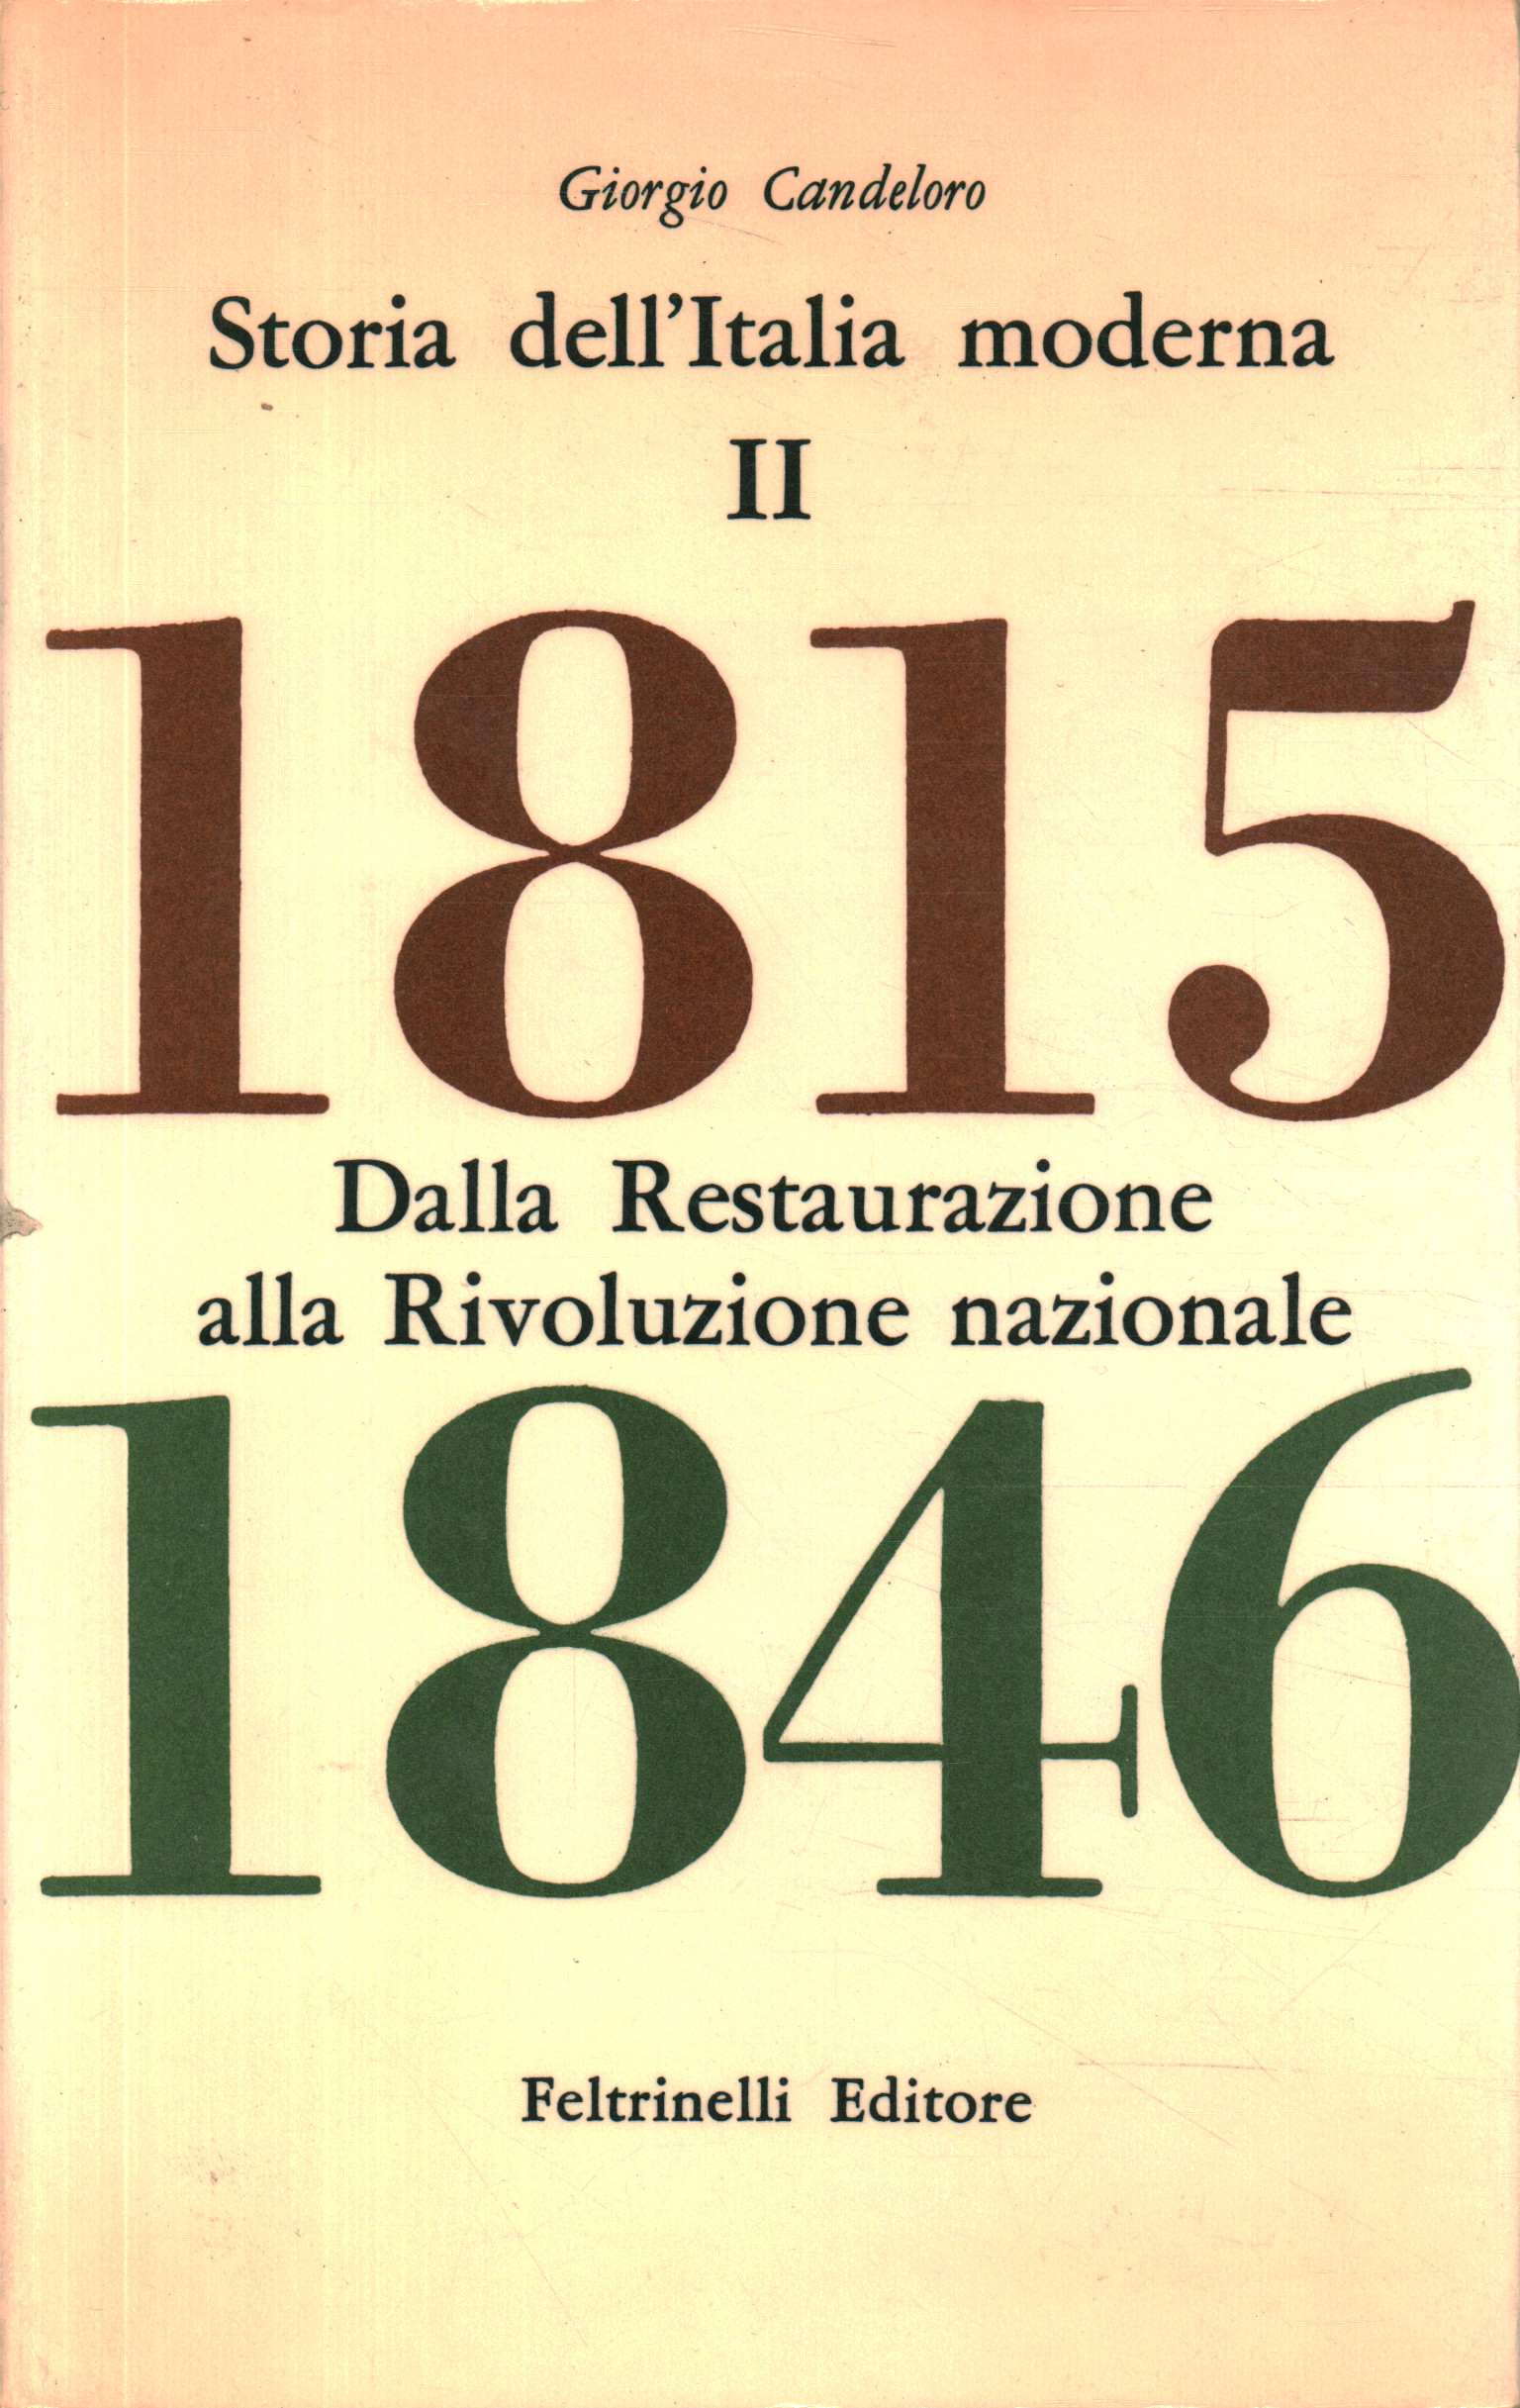 Geschichte des modernen Italiens. Von dem